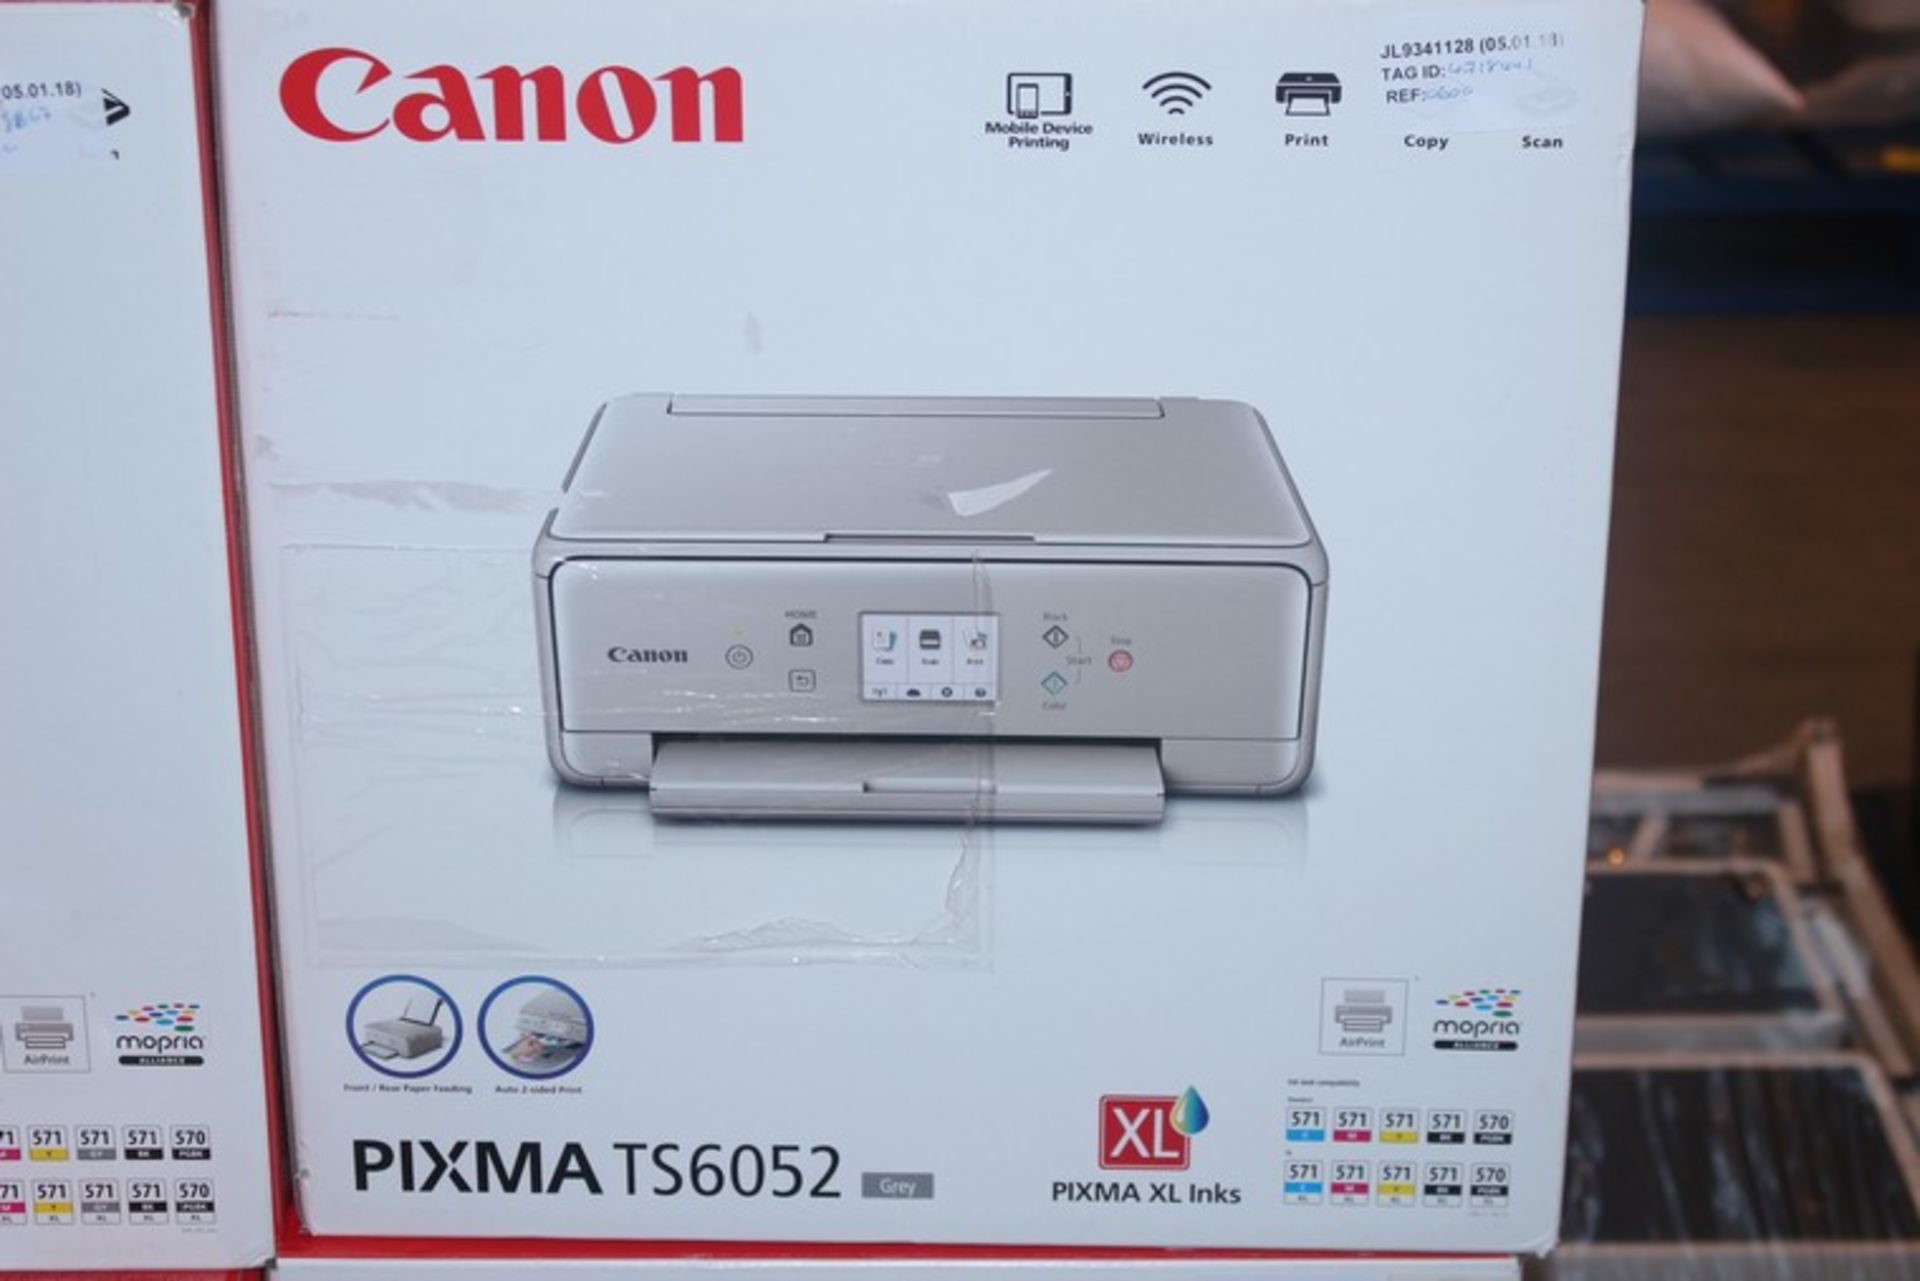 1 x CANON PIXMA TS6052 WIRELESS PRINTER SCANNER COPIER RRP £60 (05.01.18) (4718441) *PLEASE NOTE